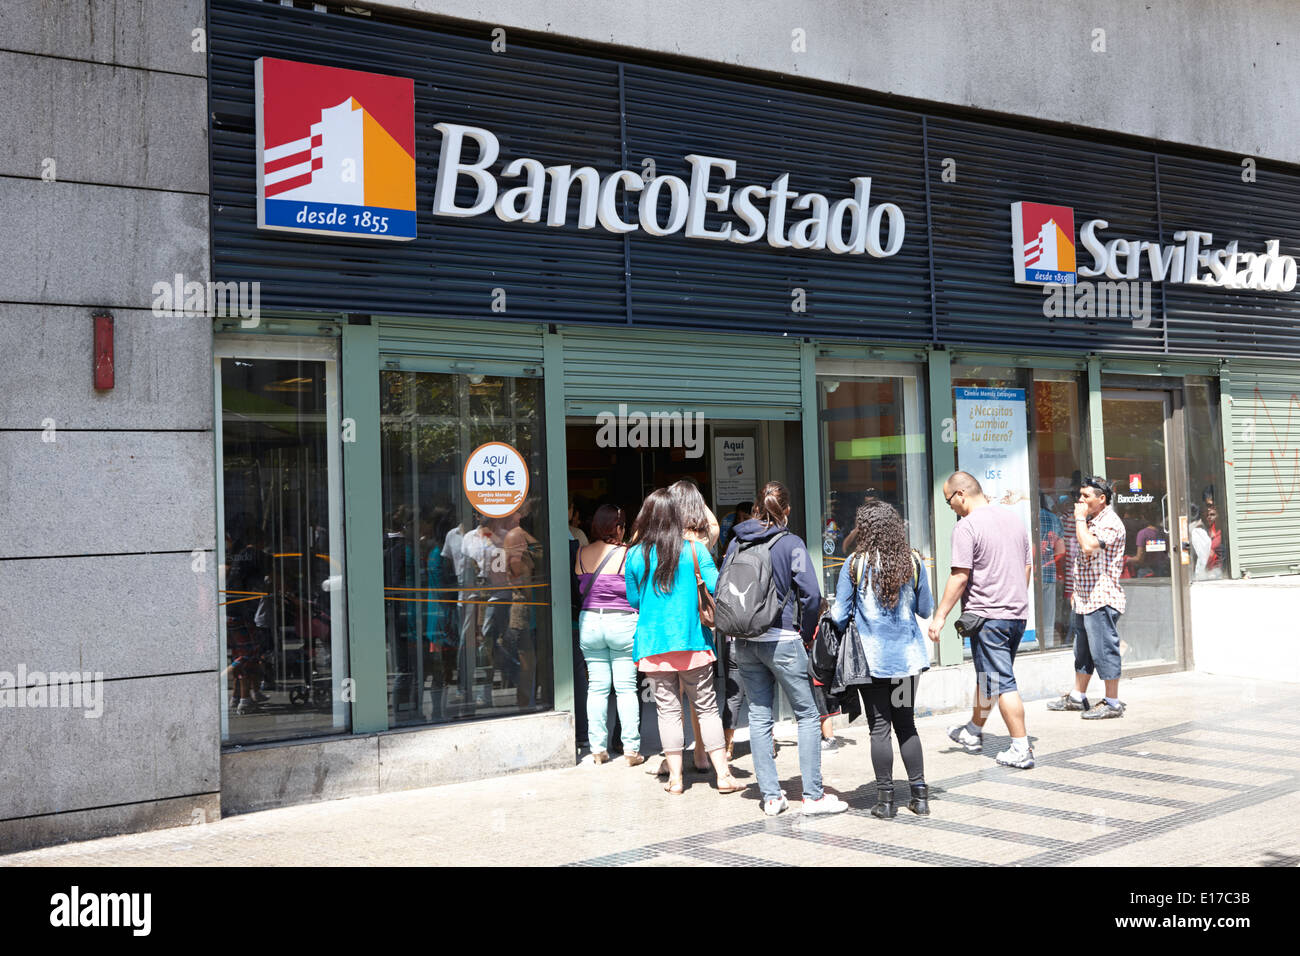 people queuing outside a branch of the banco estado Santiago Chile Stock Photo